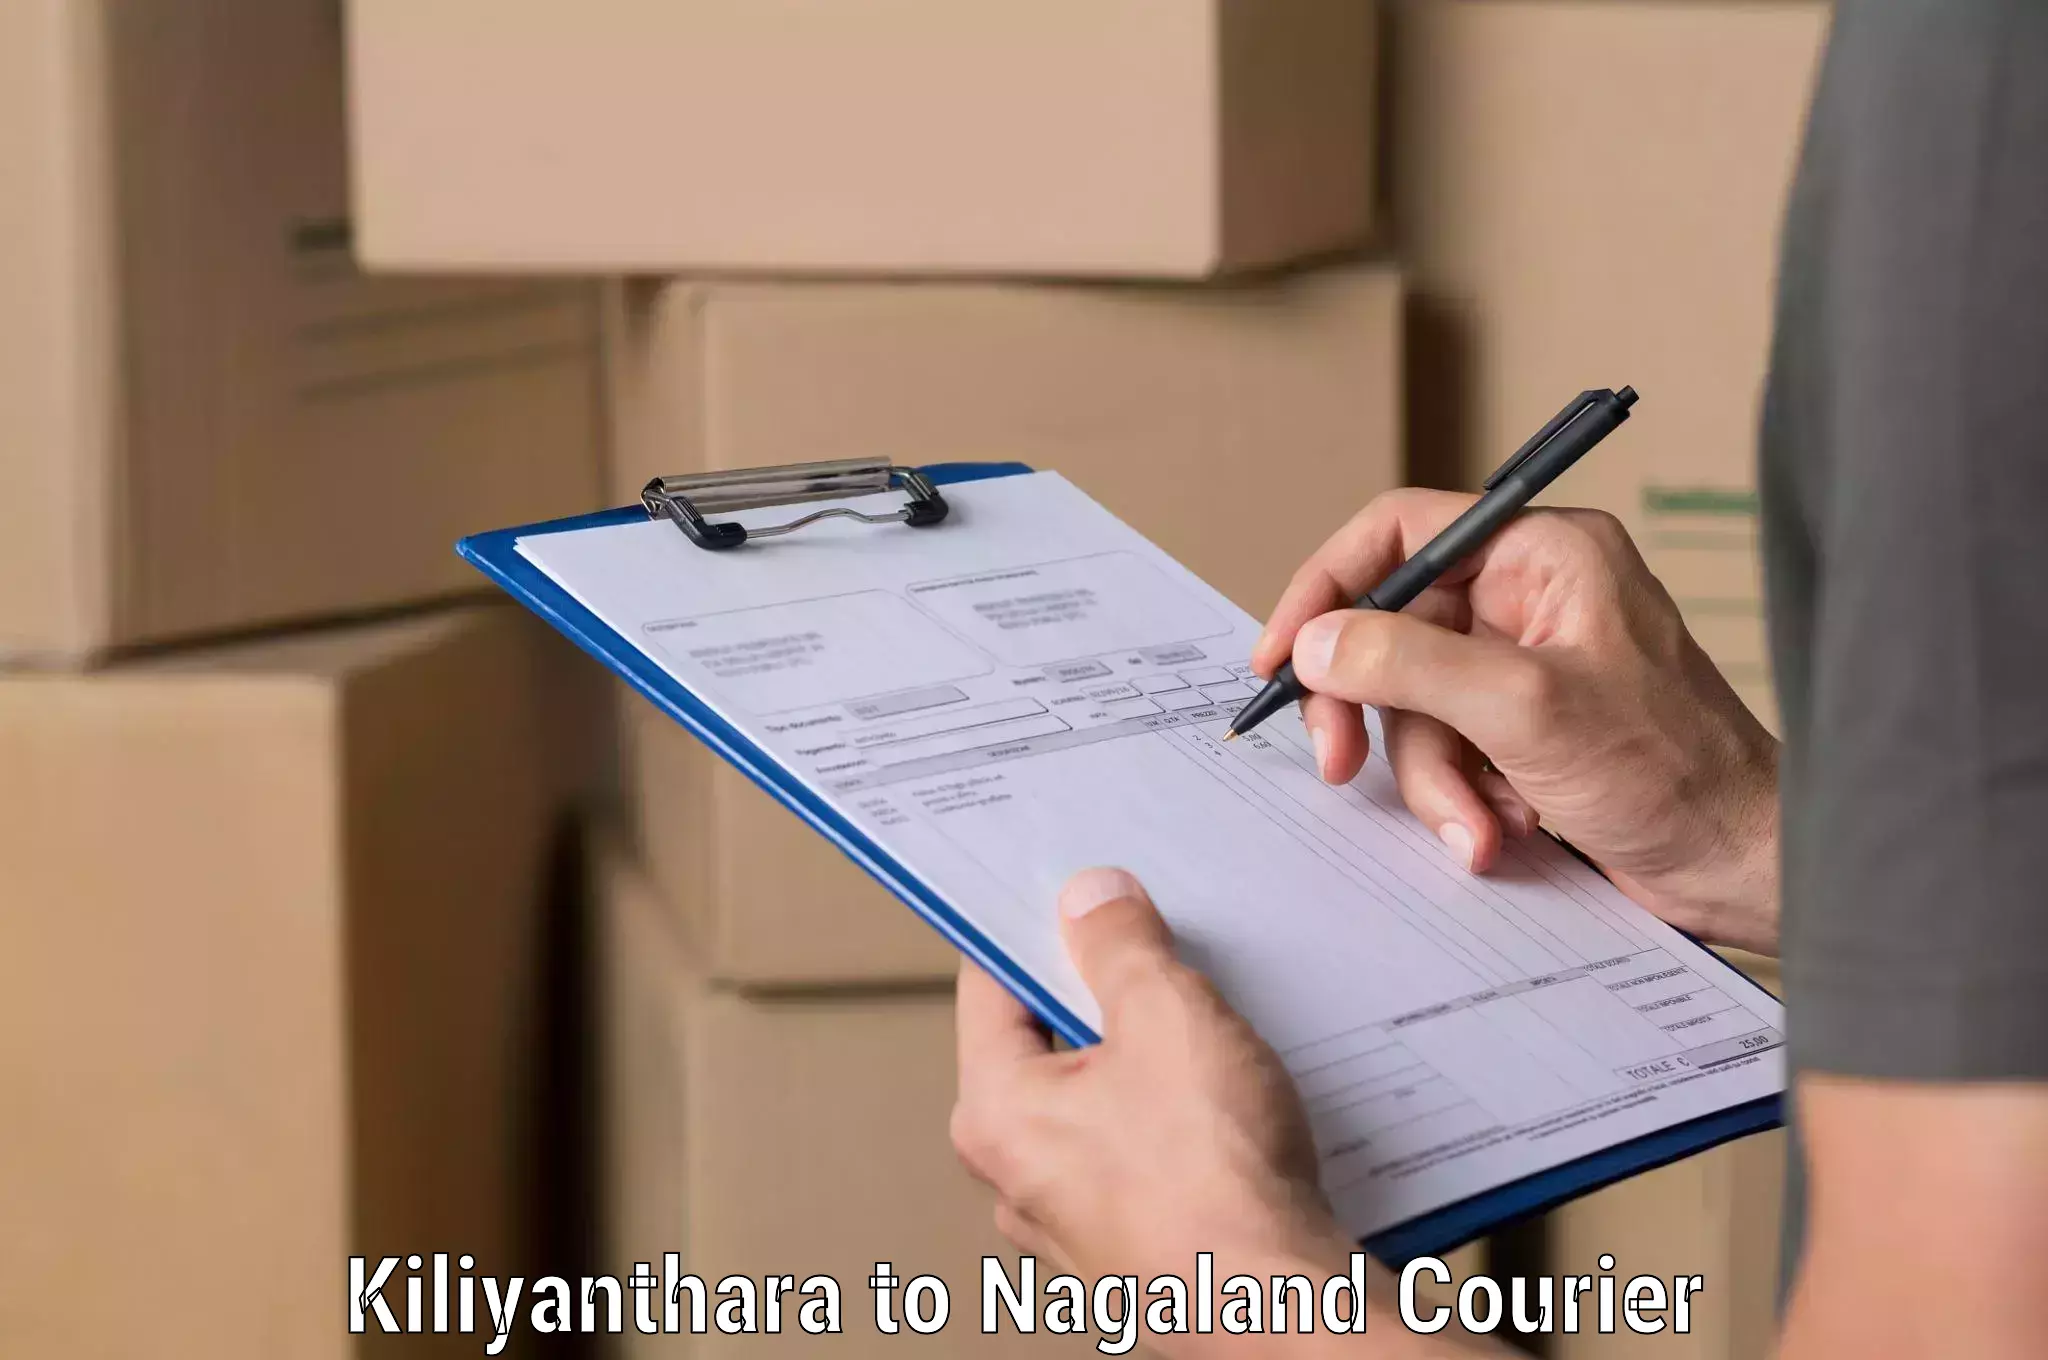 Individual parcel service Kiliyanthara to NIT Nagaland